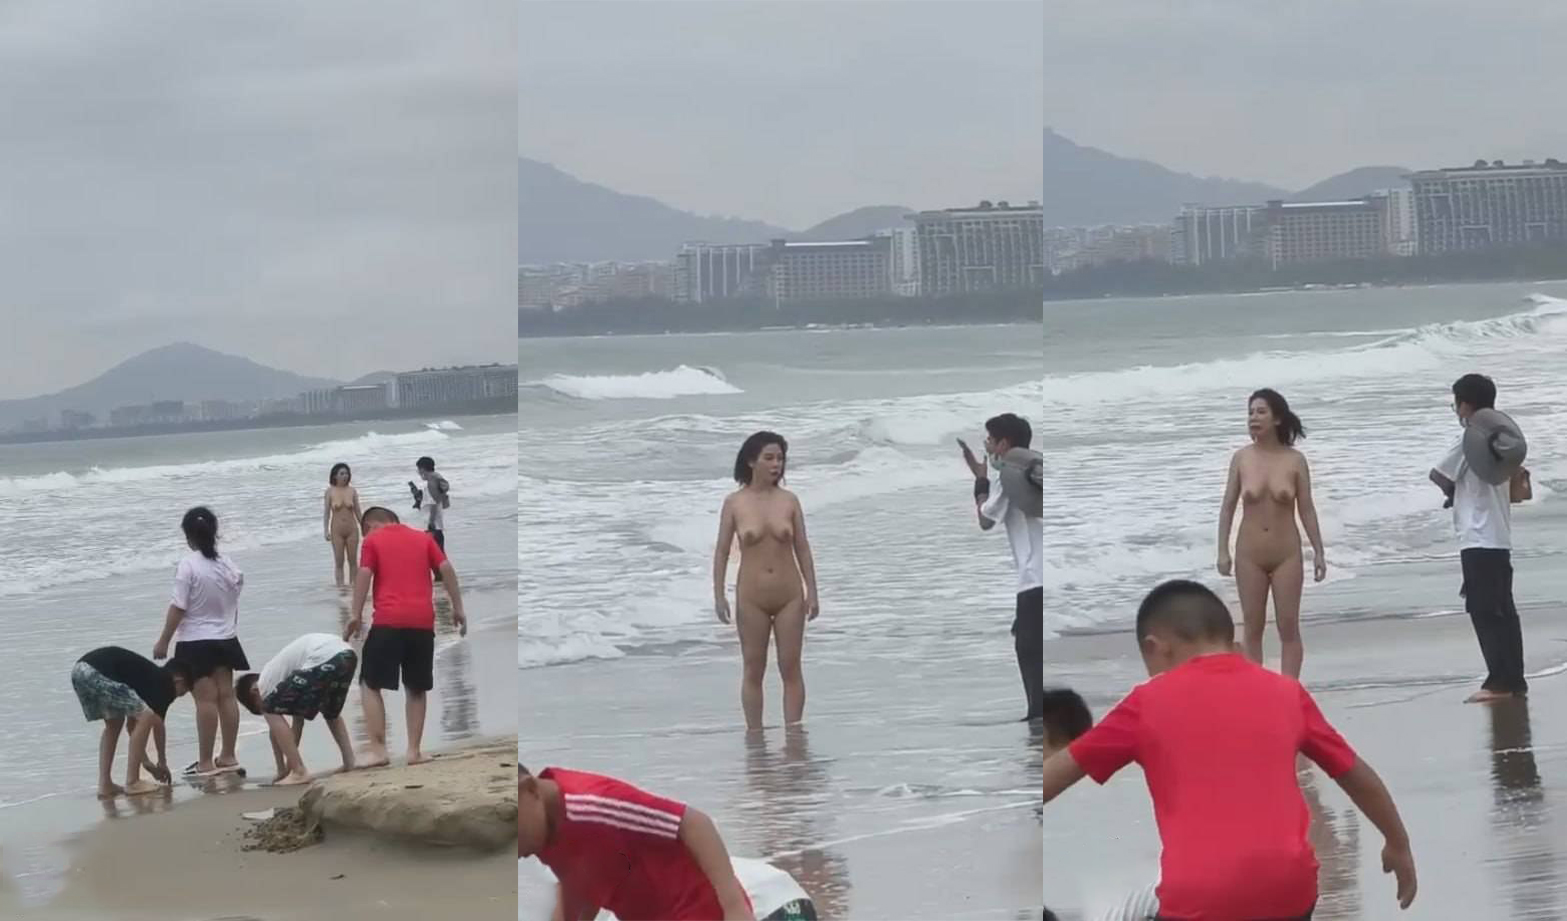 ジッターバグ・イート・メロン 4月9日 海南省三亜湾のビーチに全裸の女性が現れ、子供の前で裸になる